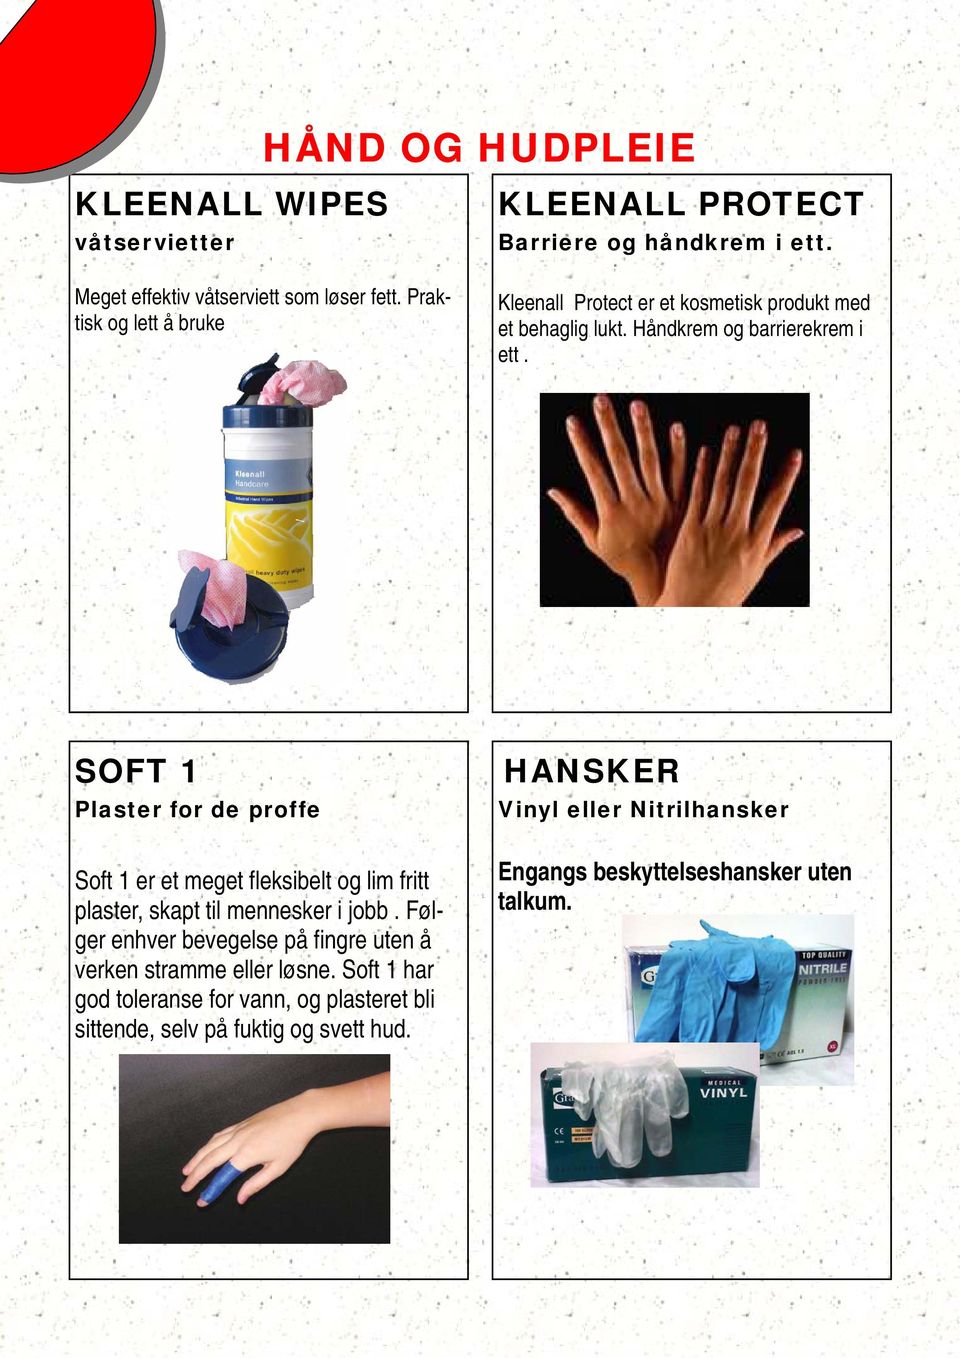 Håndkrem og barrierekrem i ett. SOFT 1 Plaster for de proffe Soft 1 er et meget fleksibelt og lim fritt plaster, skapt til mennesker i jobb.